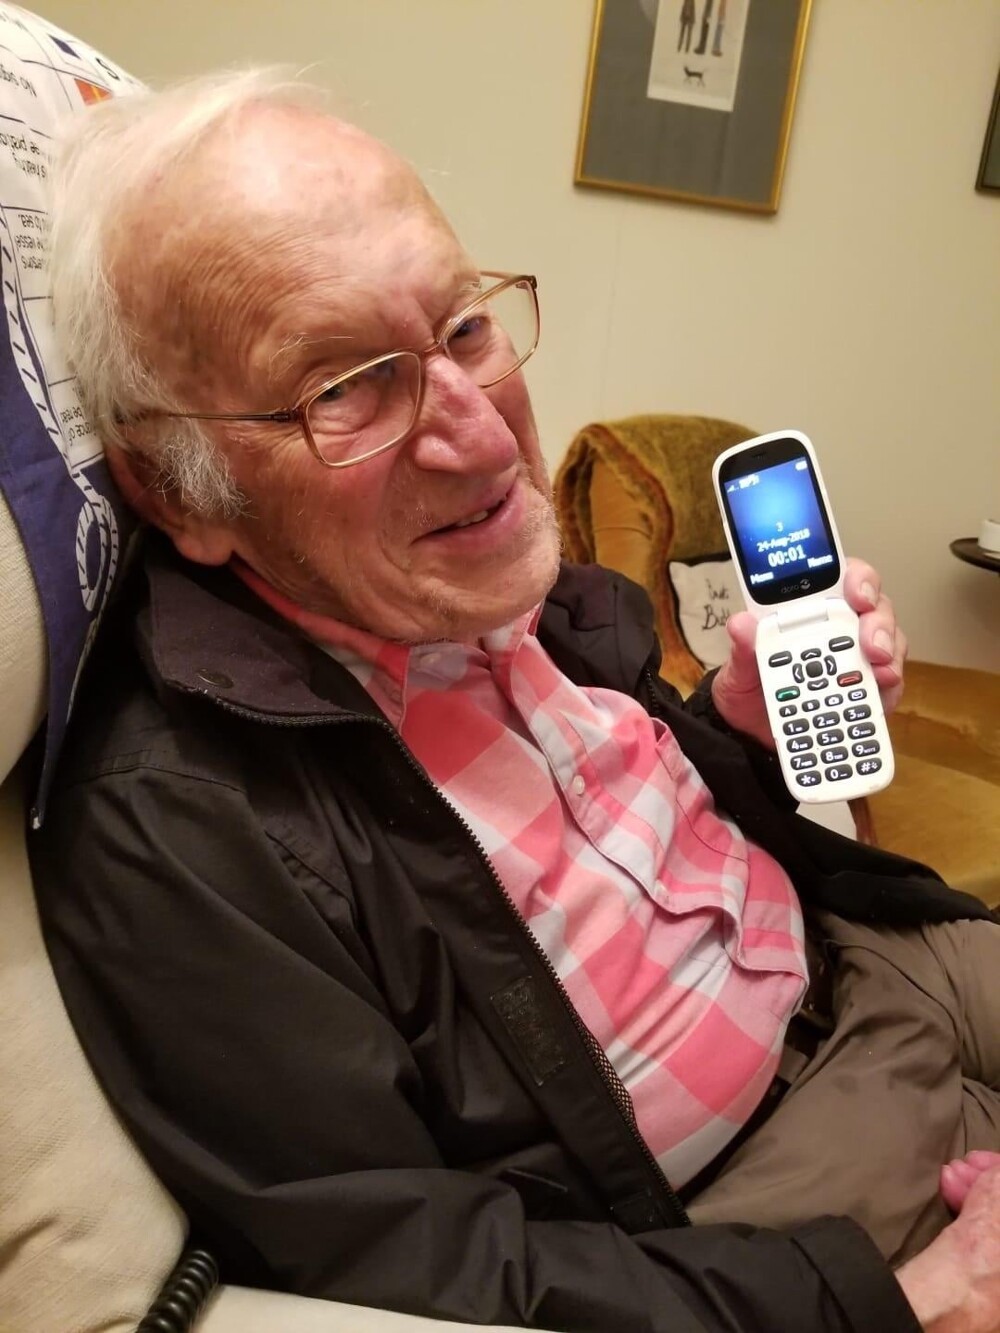 5. Дедушке исполнилось 100 лет. Он не спал до полуночи, чтобы посмотреть на телефоне, как он вступает в столетие жизни